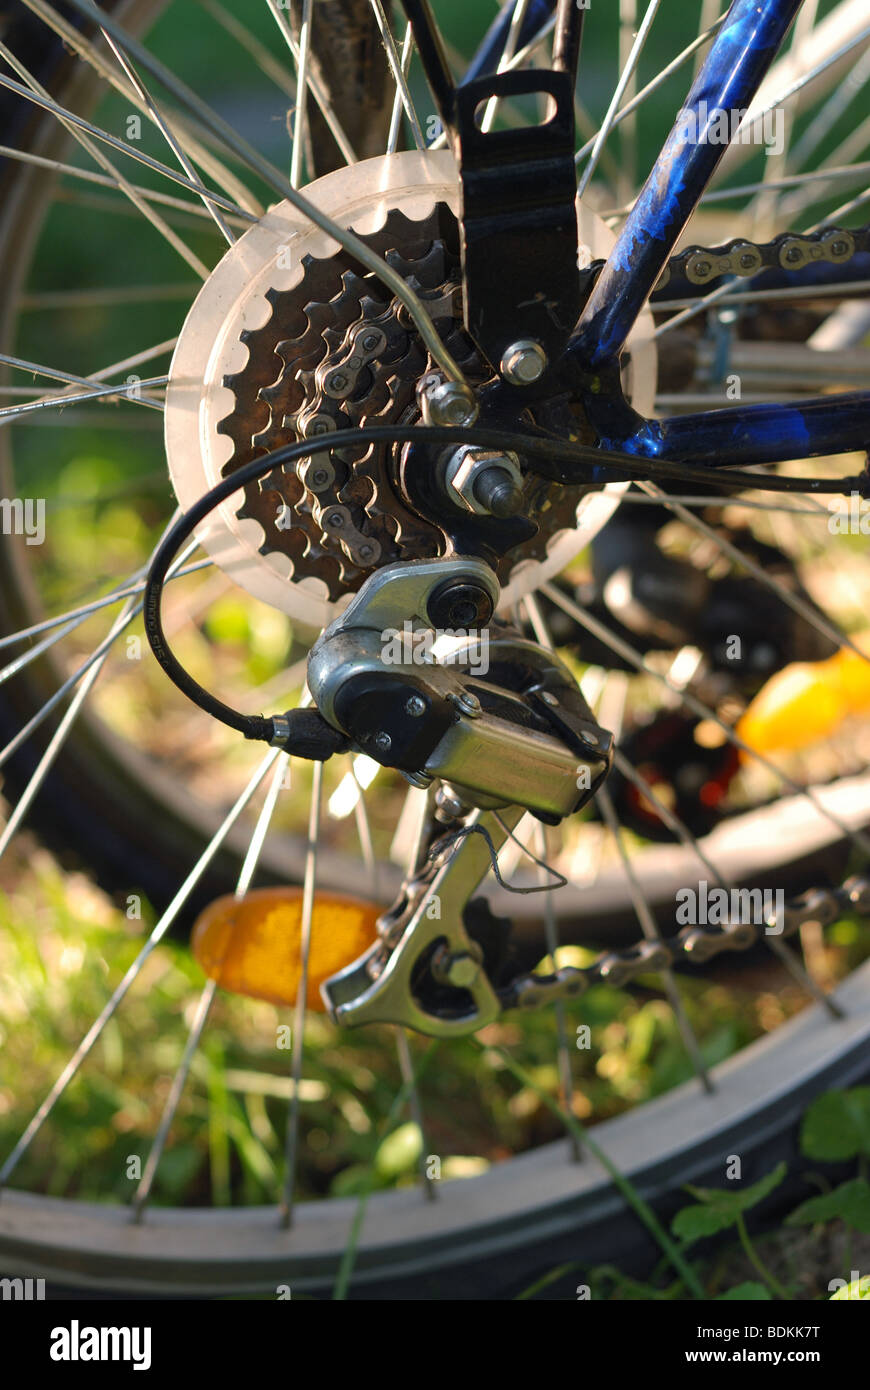 Zyklus-Rad mit Speichen, Kette und Schaltung Mechanismus, Sommer  Hintergrund unscharf Stockfotografie - Alamy